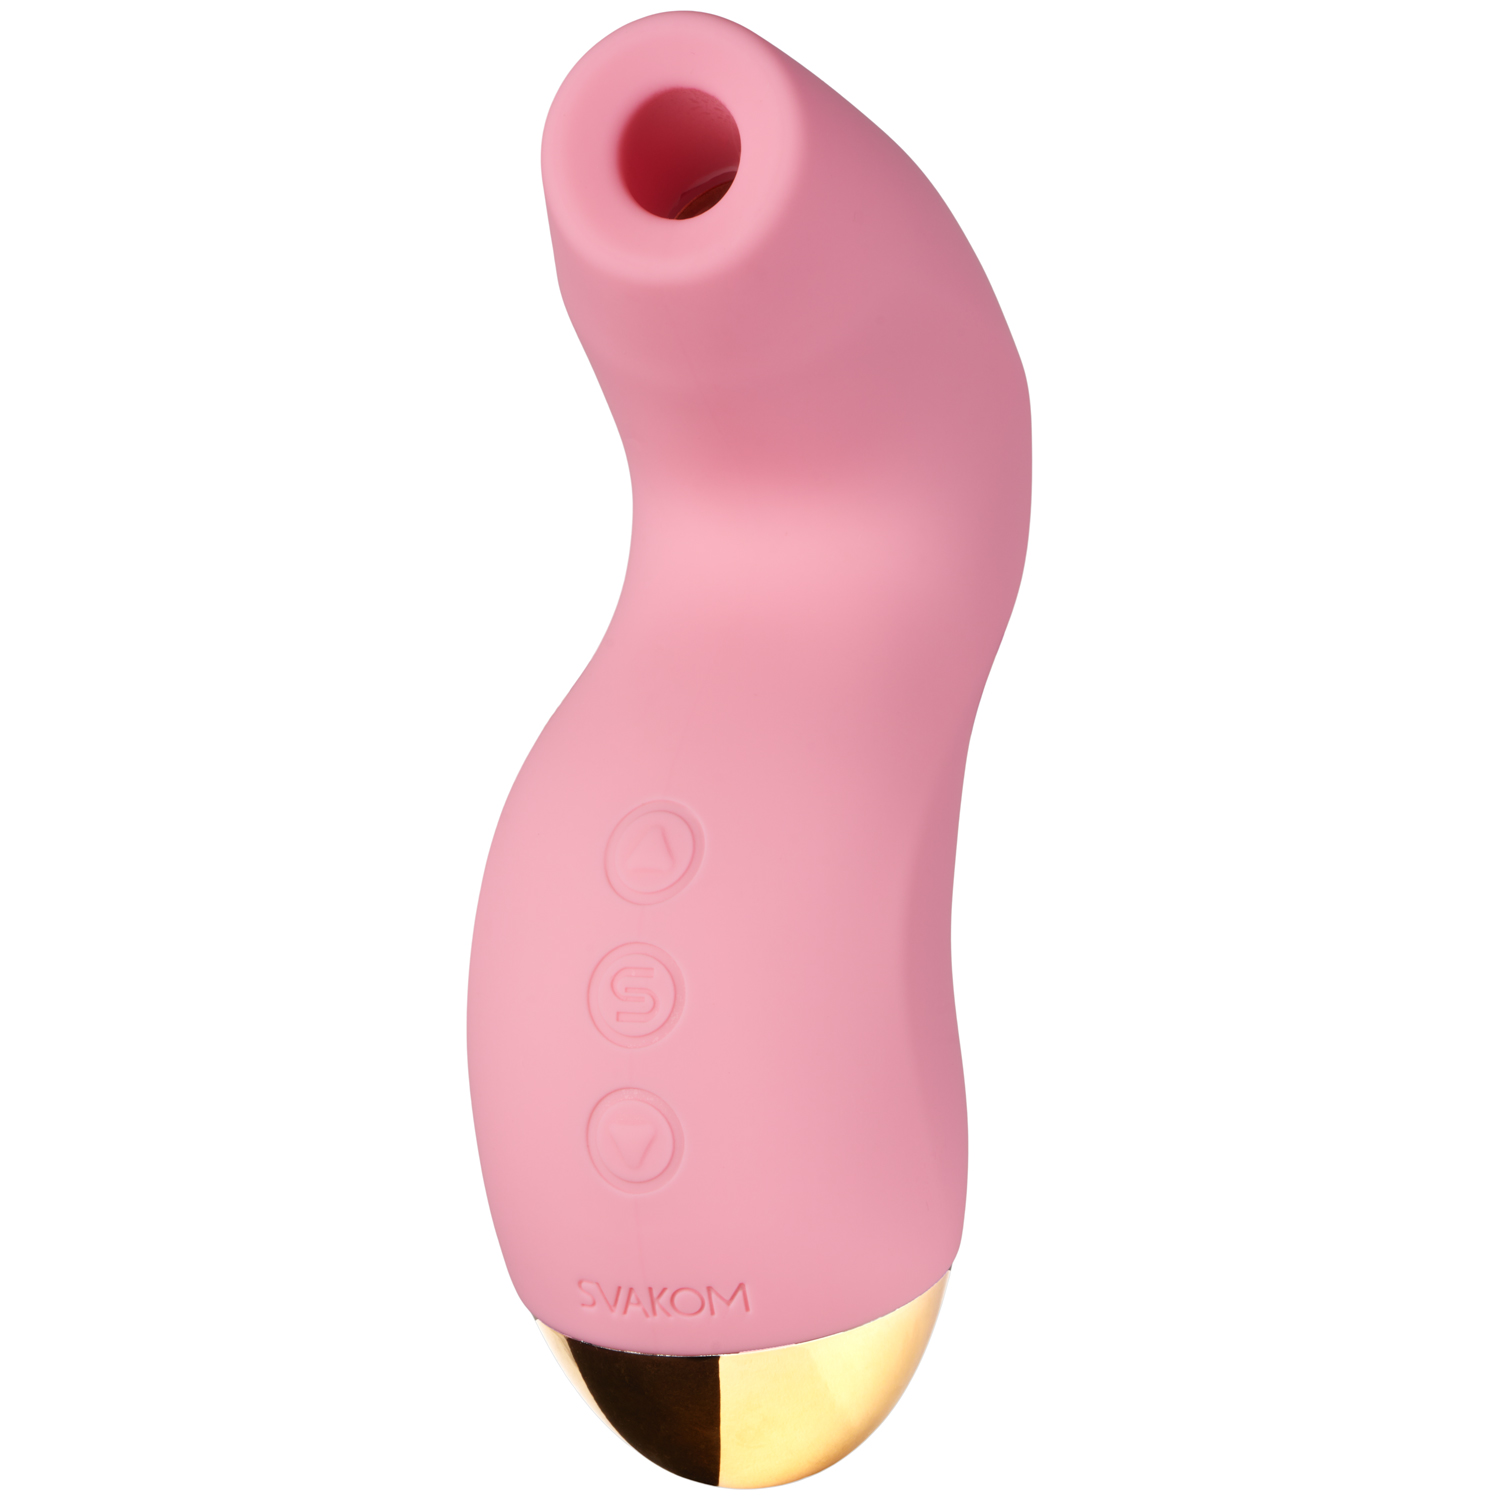 Svakom Pulse Pure Lufttrycksvibrator - Ljusrosa | Vibratorer//Favoriter//REA för kvinnor//REA för kvinnor//Kvinnor//Laddningsbar Vibrator//REA//Lufttrycksvibrator//Svakom//Klitorisvibrator//How to Build a Sex Room//Färgglada Vibratorer//Rosa Vibratorer//Blåa Vibratorer | Intimast